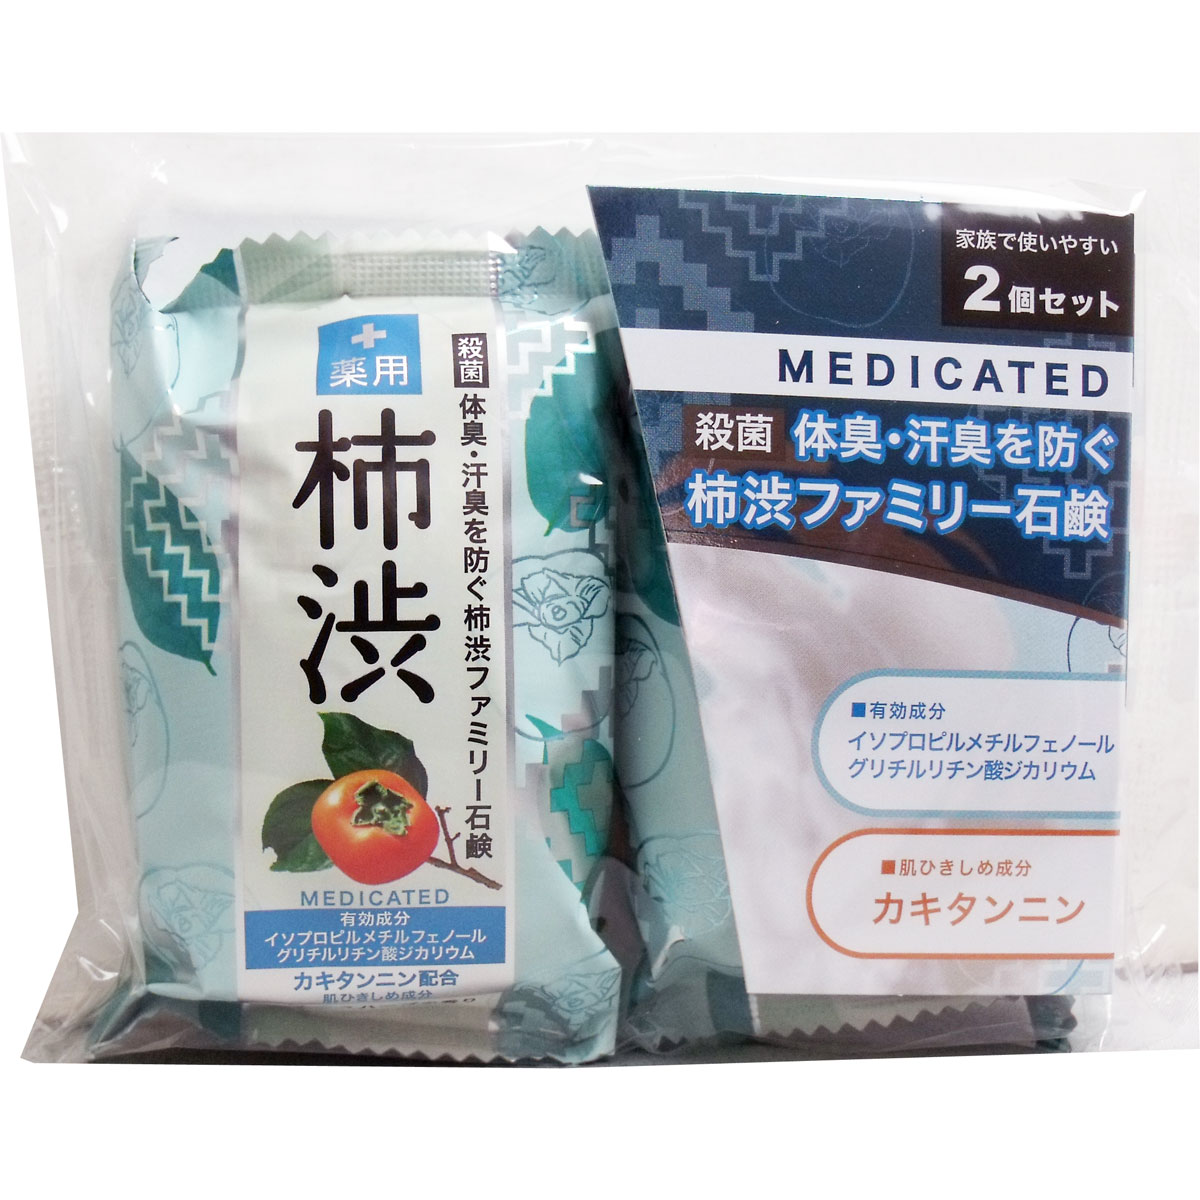 [廃盤]薬用 柿渋ファミリー石鹸 80g×2個セット